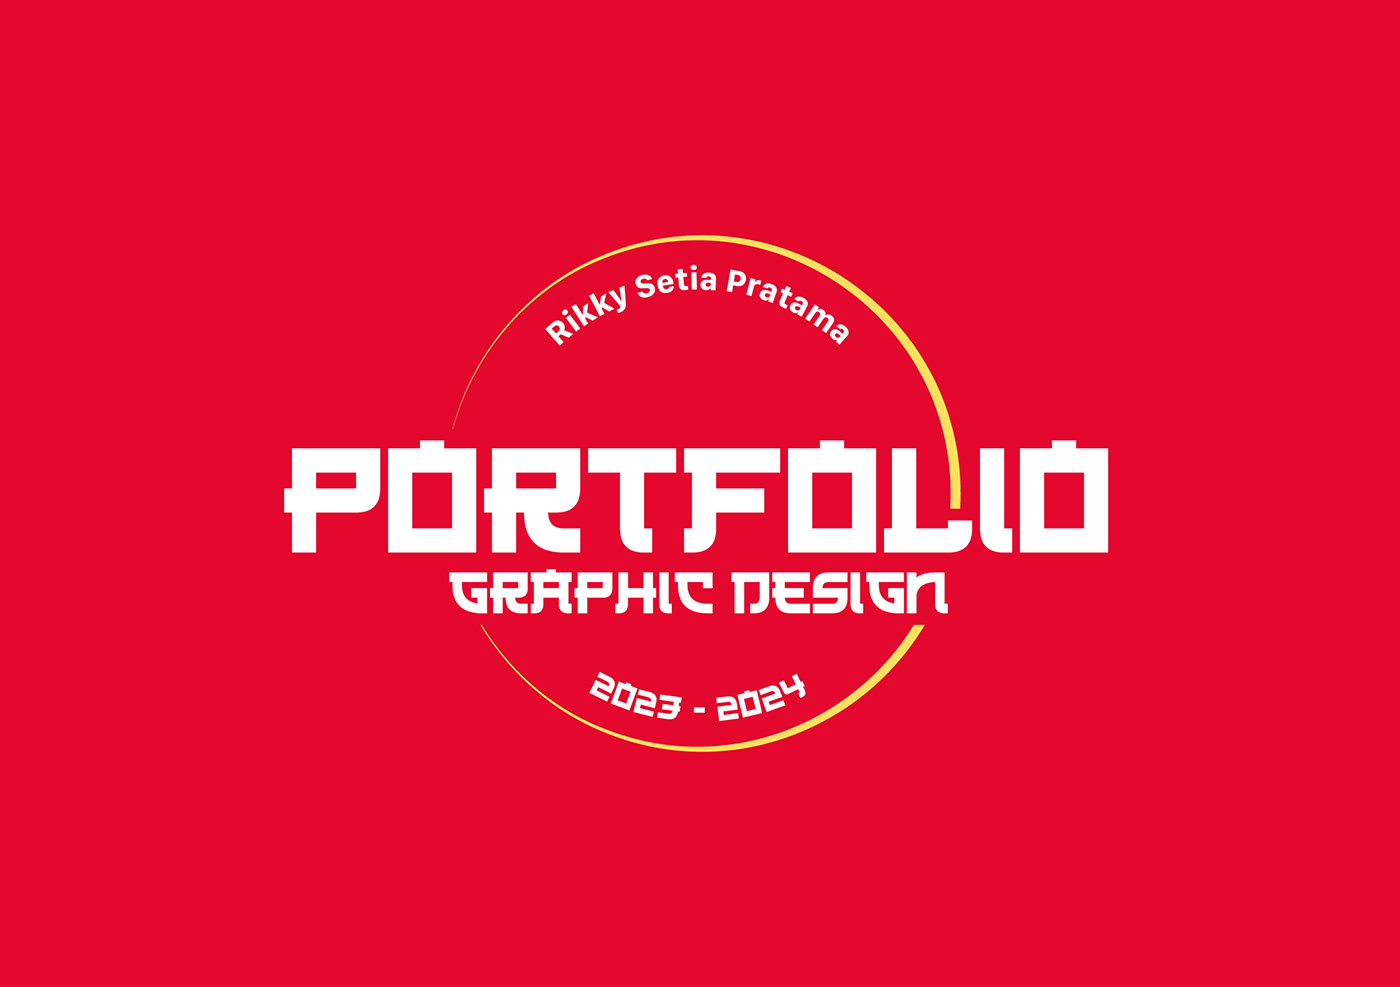 portfolio graphic design 2023 - 2024